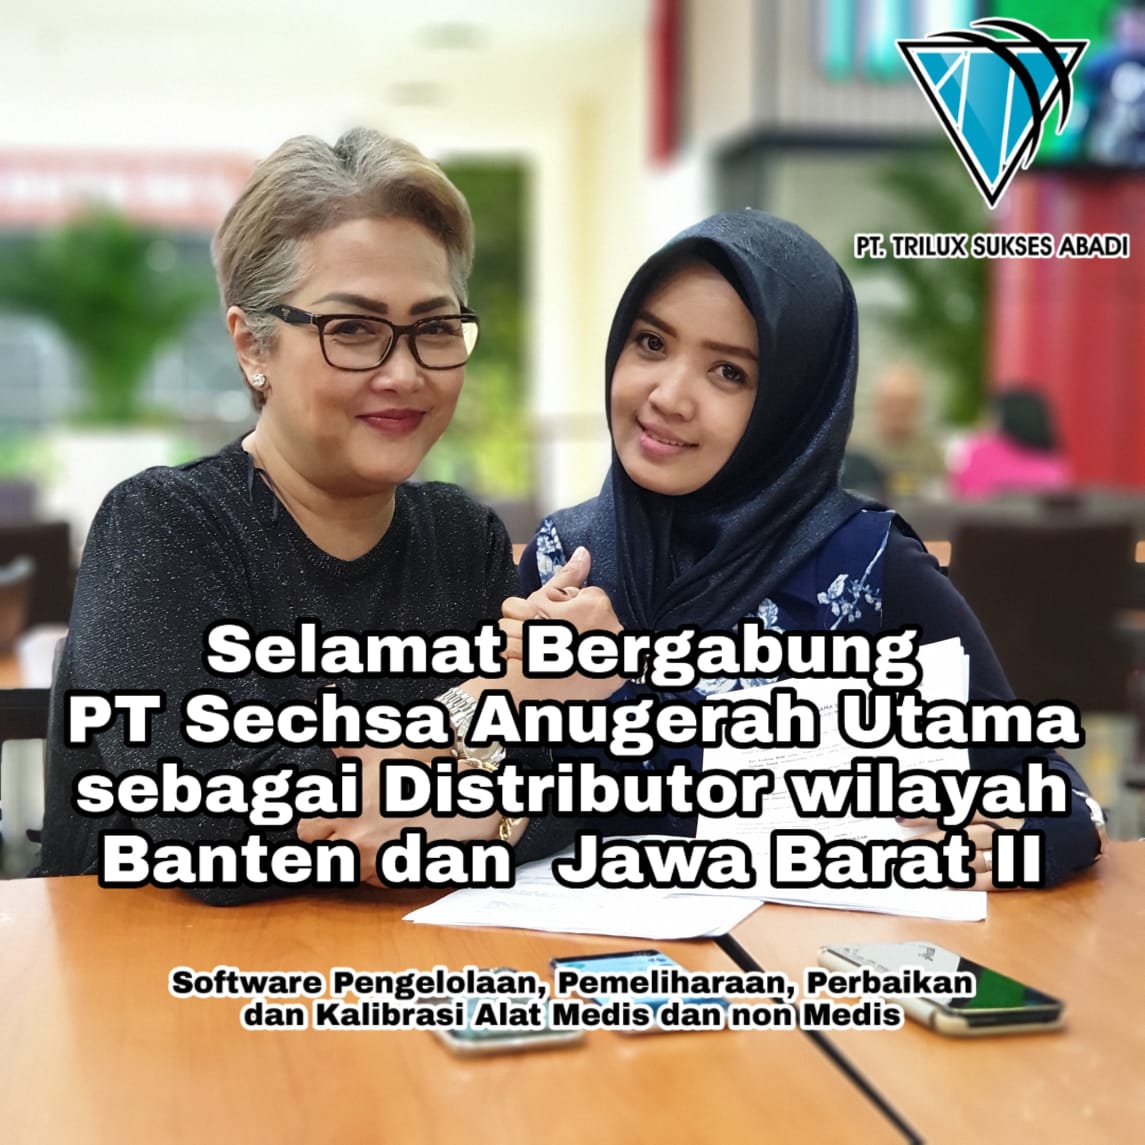 Selamat Bergabung PT. Sechsa Anugerah Utama sebagai Distributor kami di wilayah Banten dan Jawa Barat II